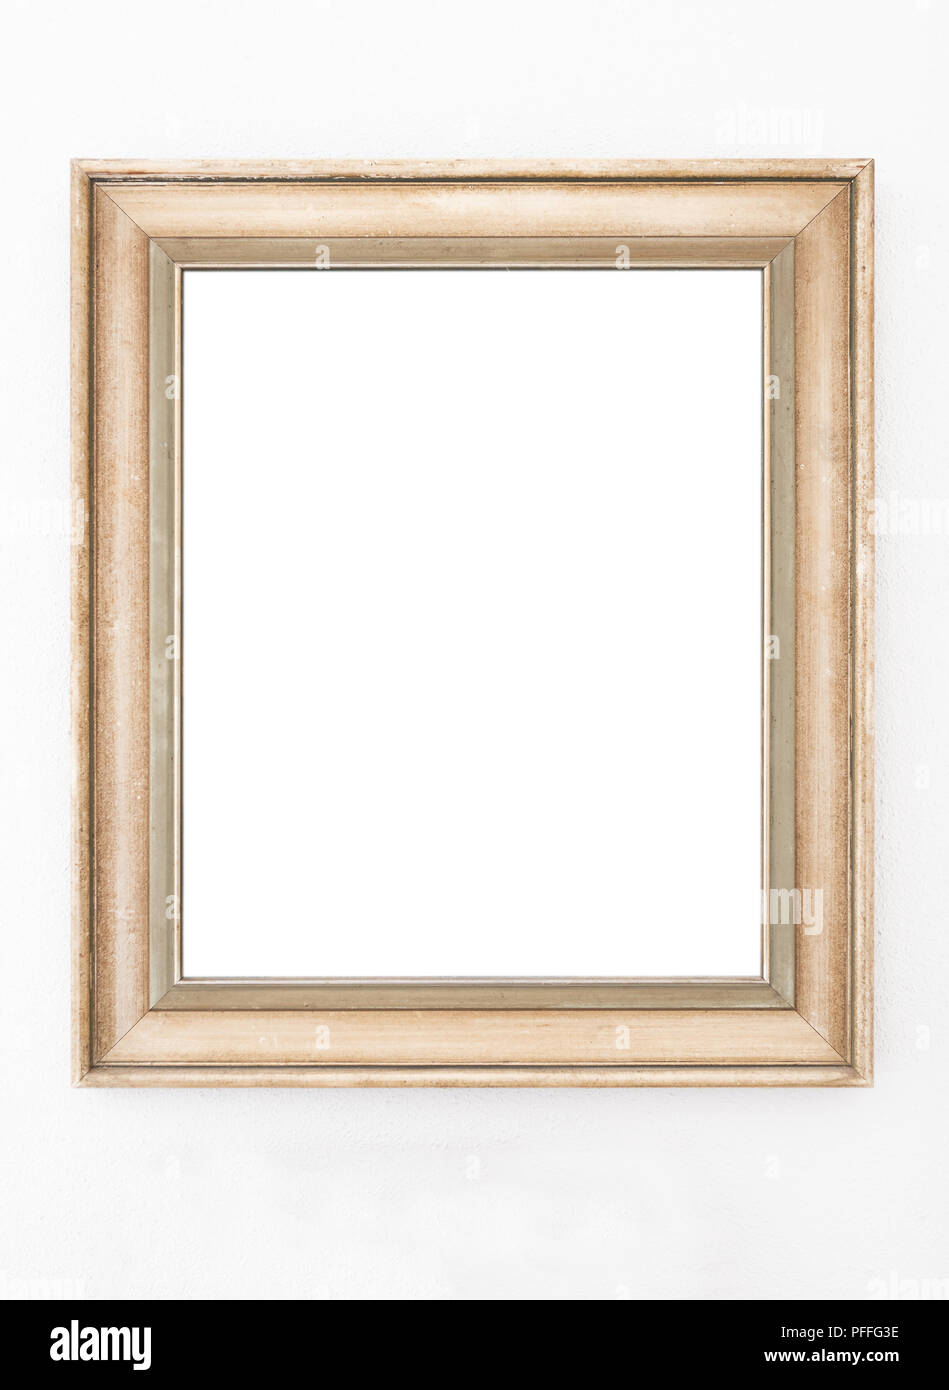 Marco de imagen vacío ornamentado colgando en la pared Foto de stock